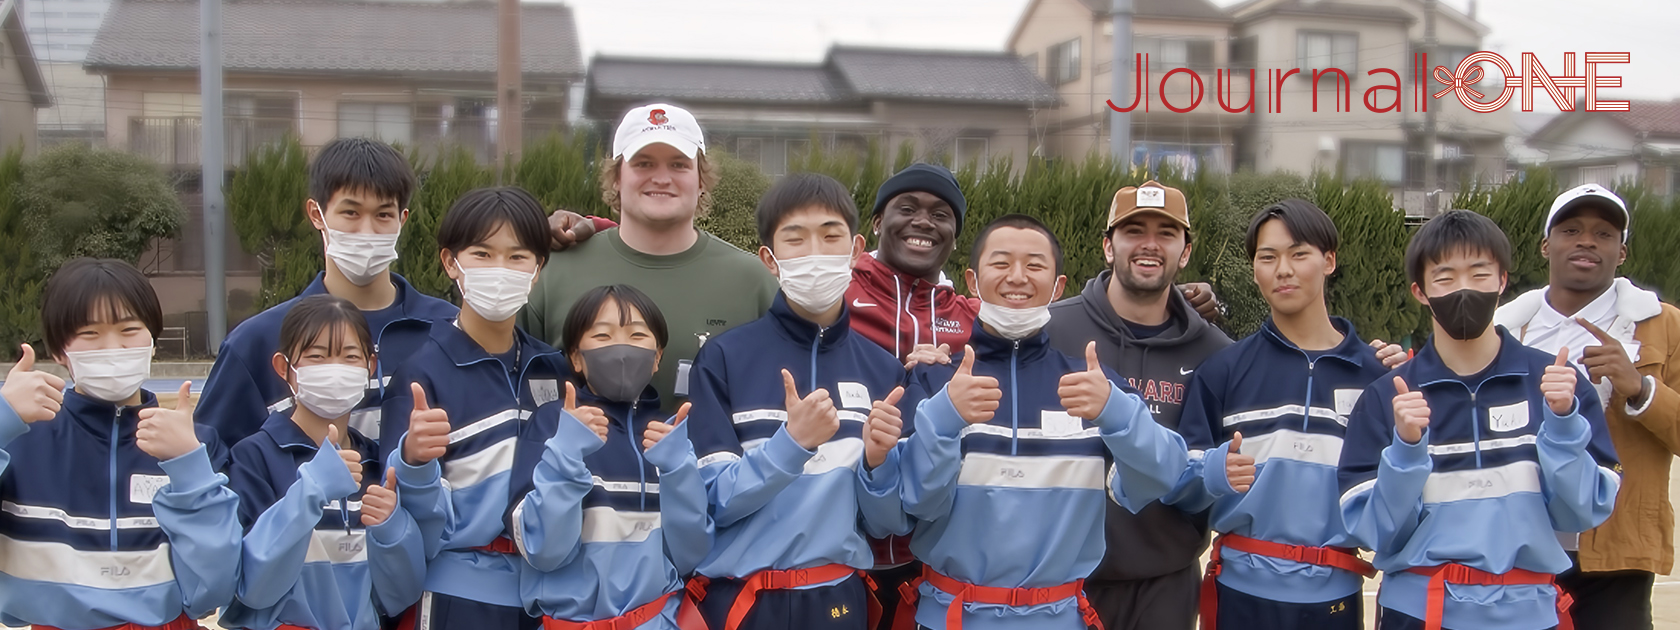 アメリカンフットボール アイビーリーグ選抜選手と川崎市立橘高等学校の生徒の皆さんが交流 -Journal-ONE撮影